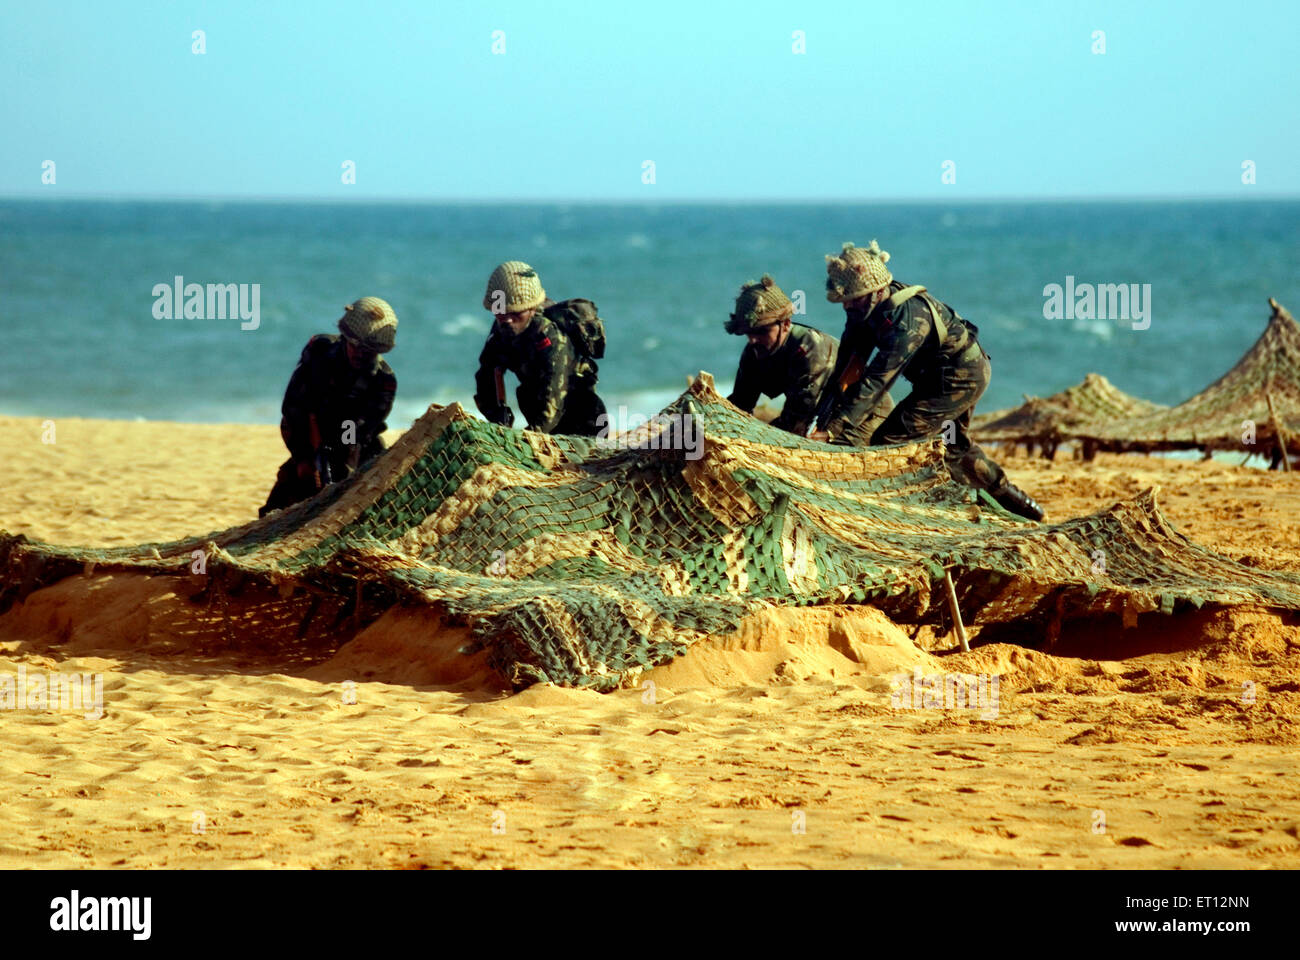 Indische Armee erobert feindliche Bunker Demonstration am Tag der Armee ; Shankumugham Beach ; Trivandrum ; Thiruvananthapuram ; Kerala ; Indien Stockfoto